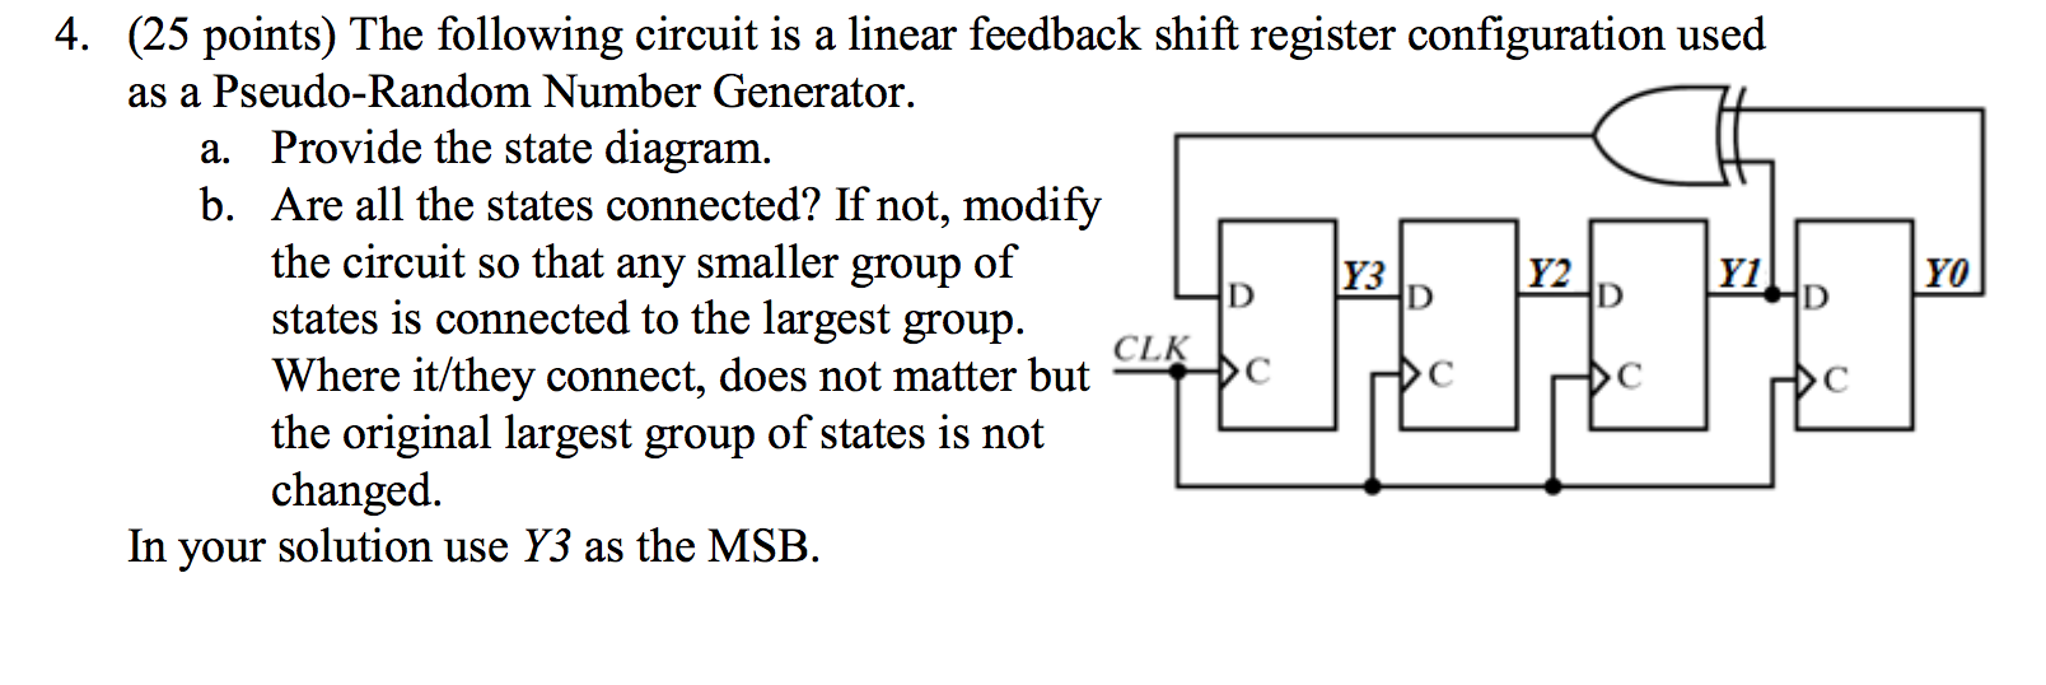 4 bit linear feedback shift register